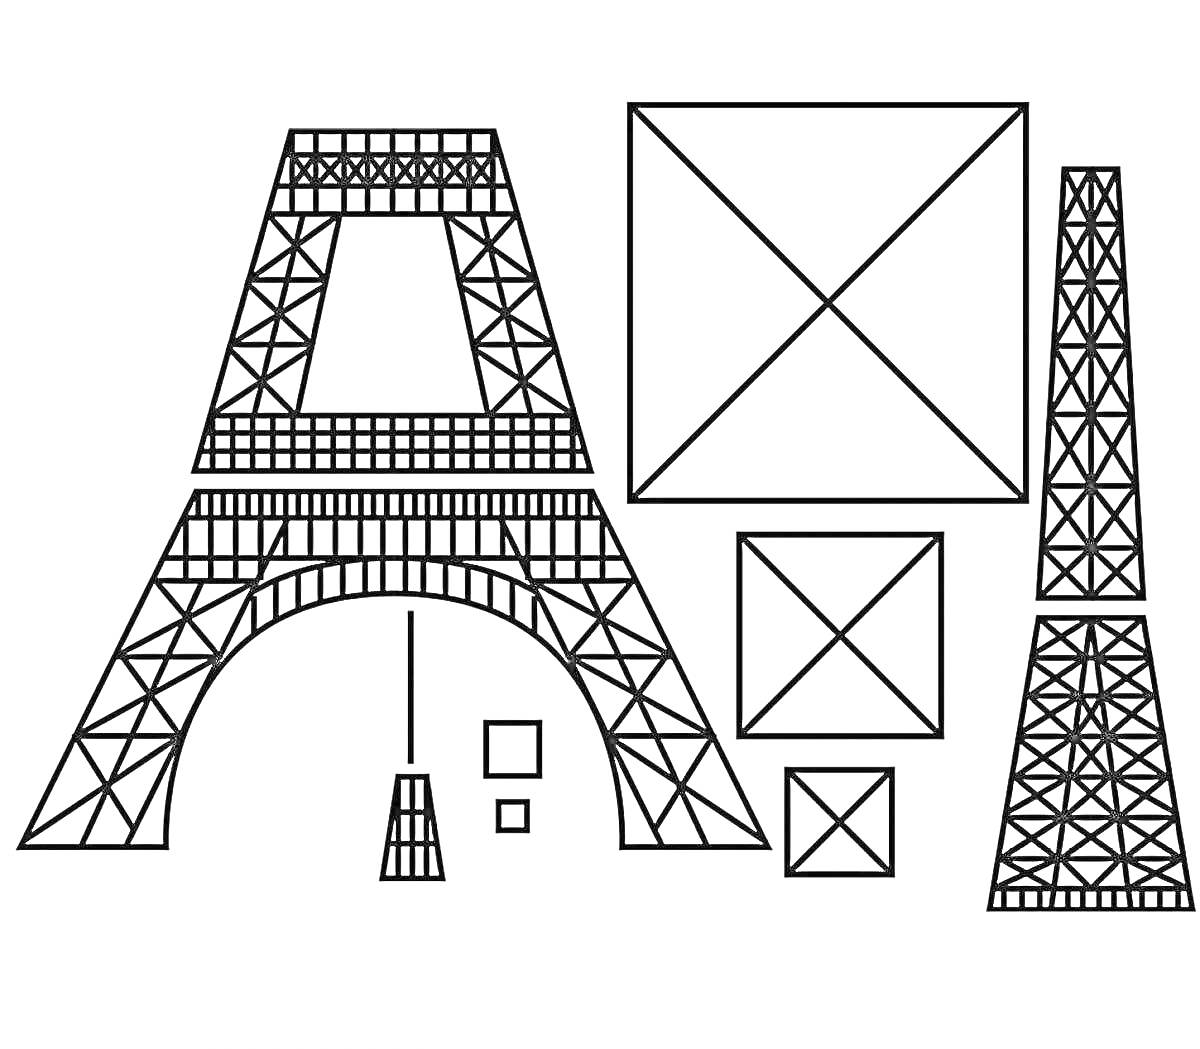 Раскраска 3D рисунок с элементами Эйфелевой башни и геометрическими фигурами (квадратами разного размера и прямоугольником).